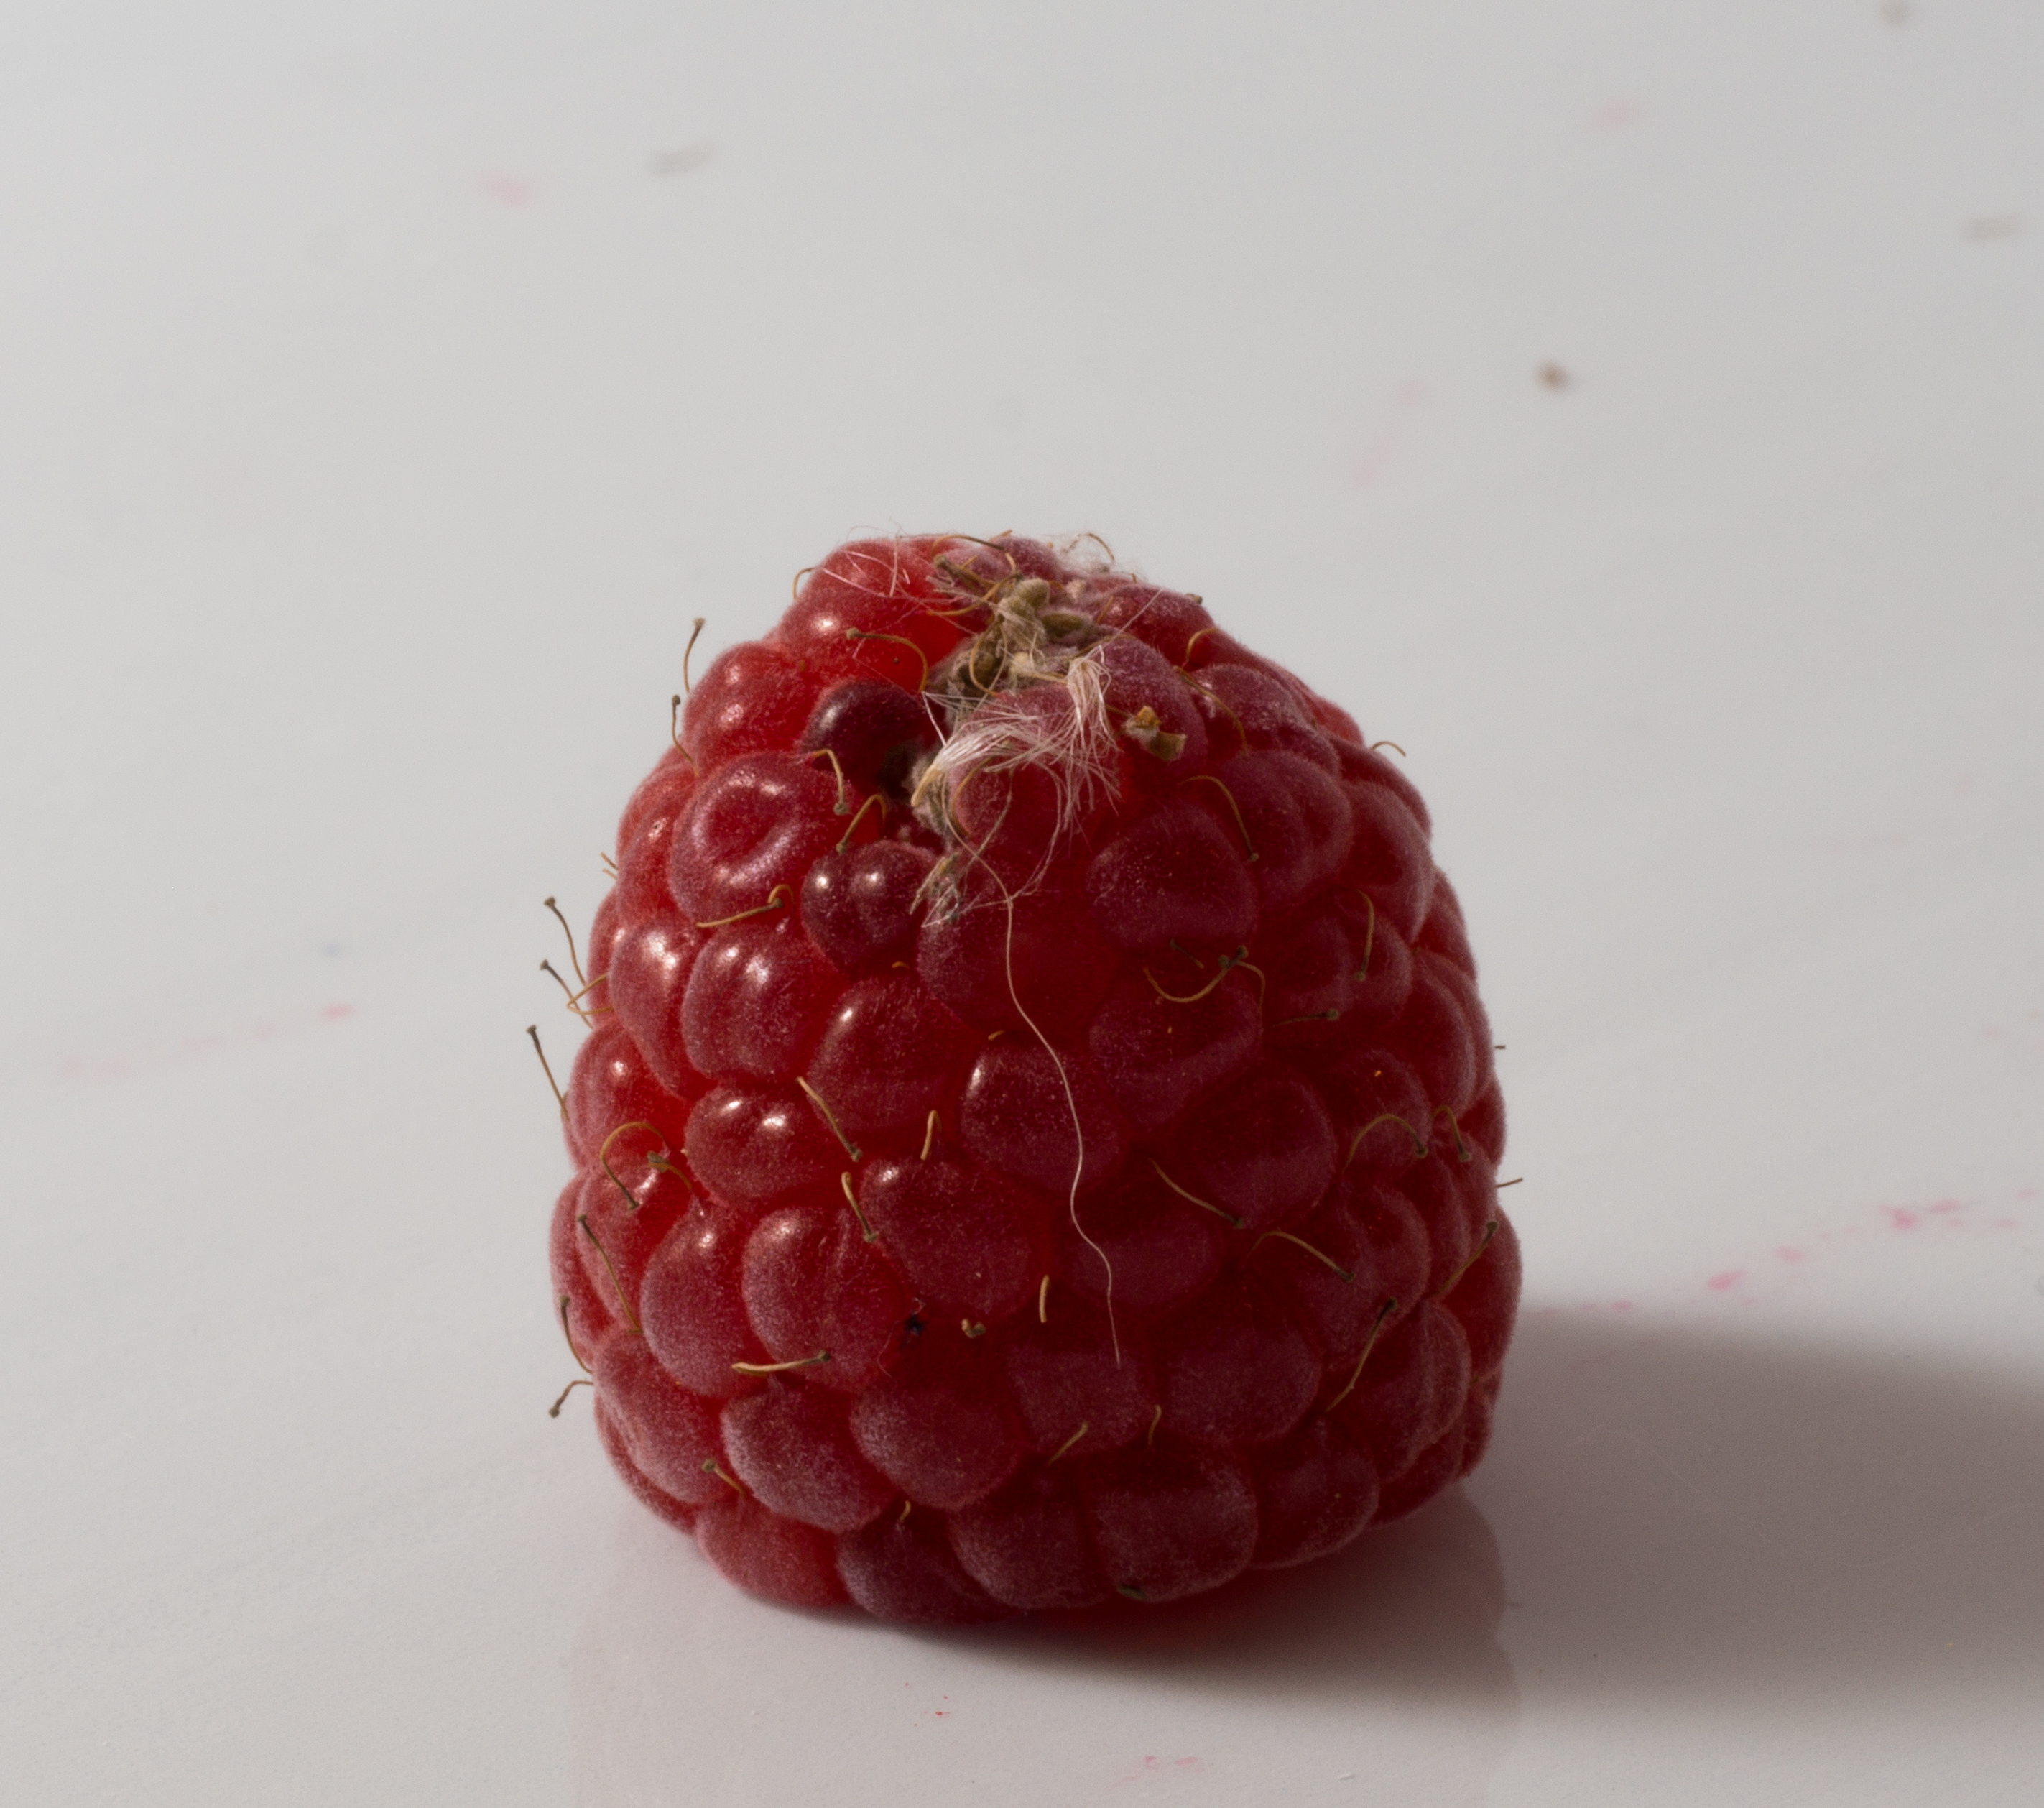 Raspberry with fuzz (40969)